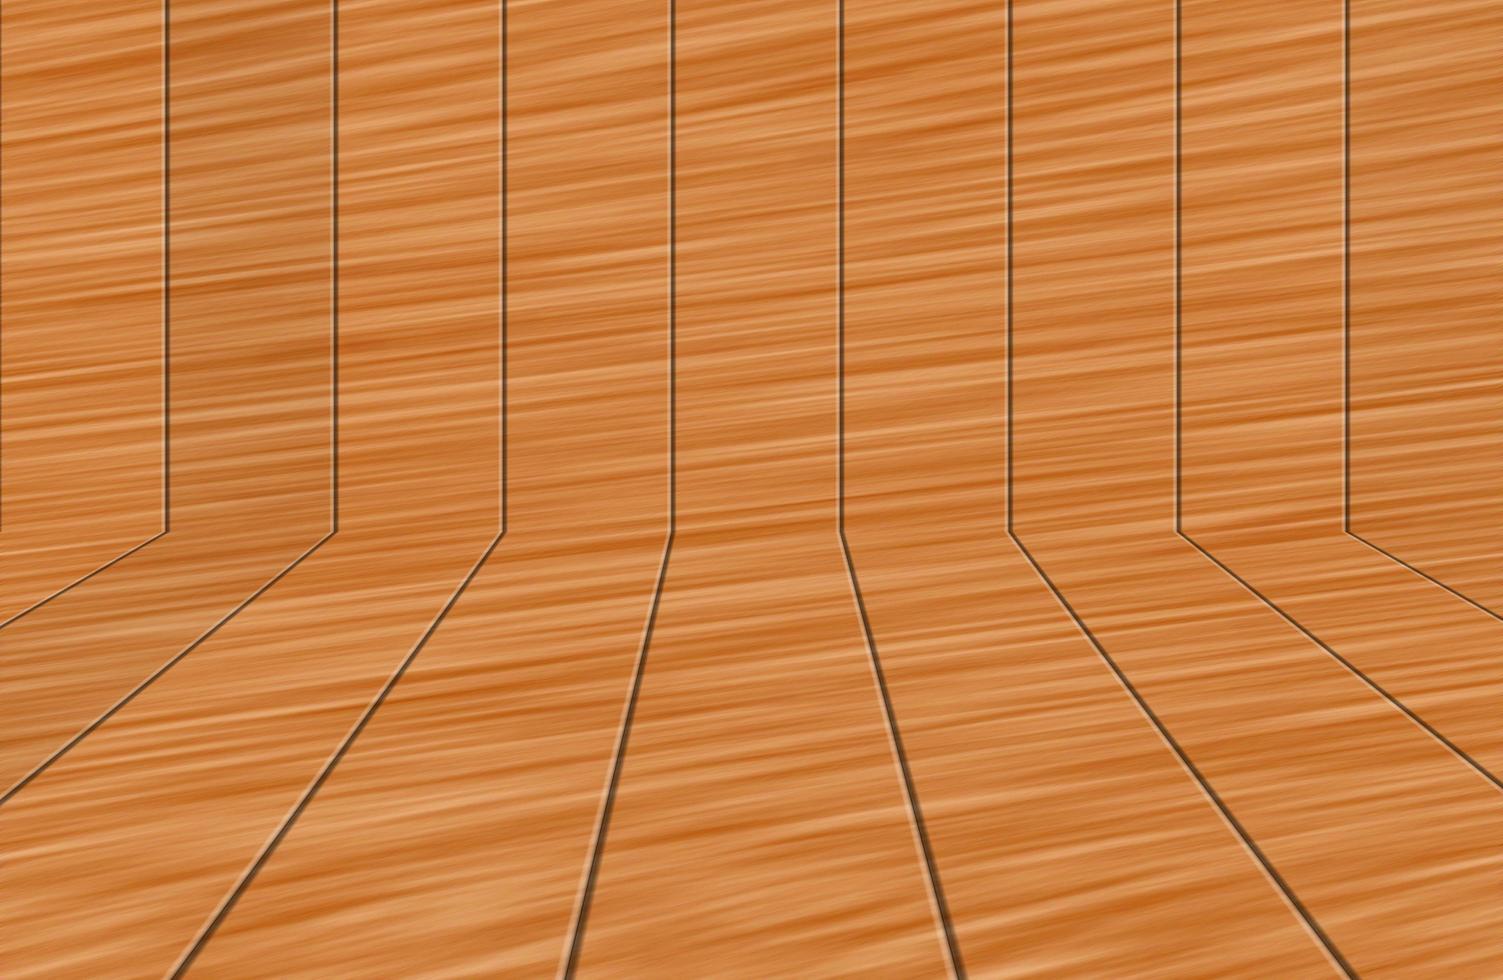 la parete di legno del fienile marrone. pattern di sfondo trama muro. foto